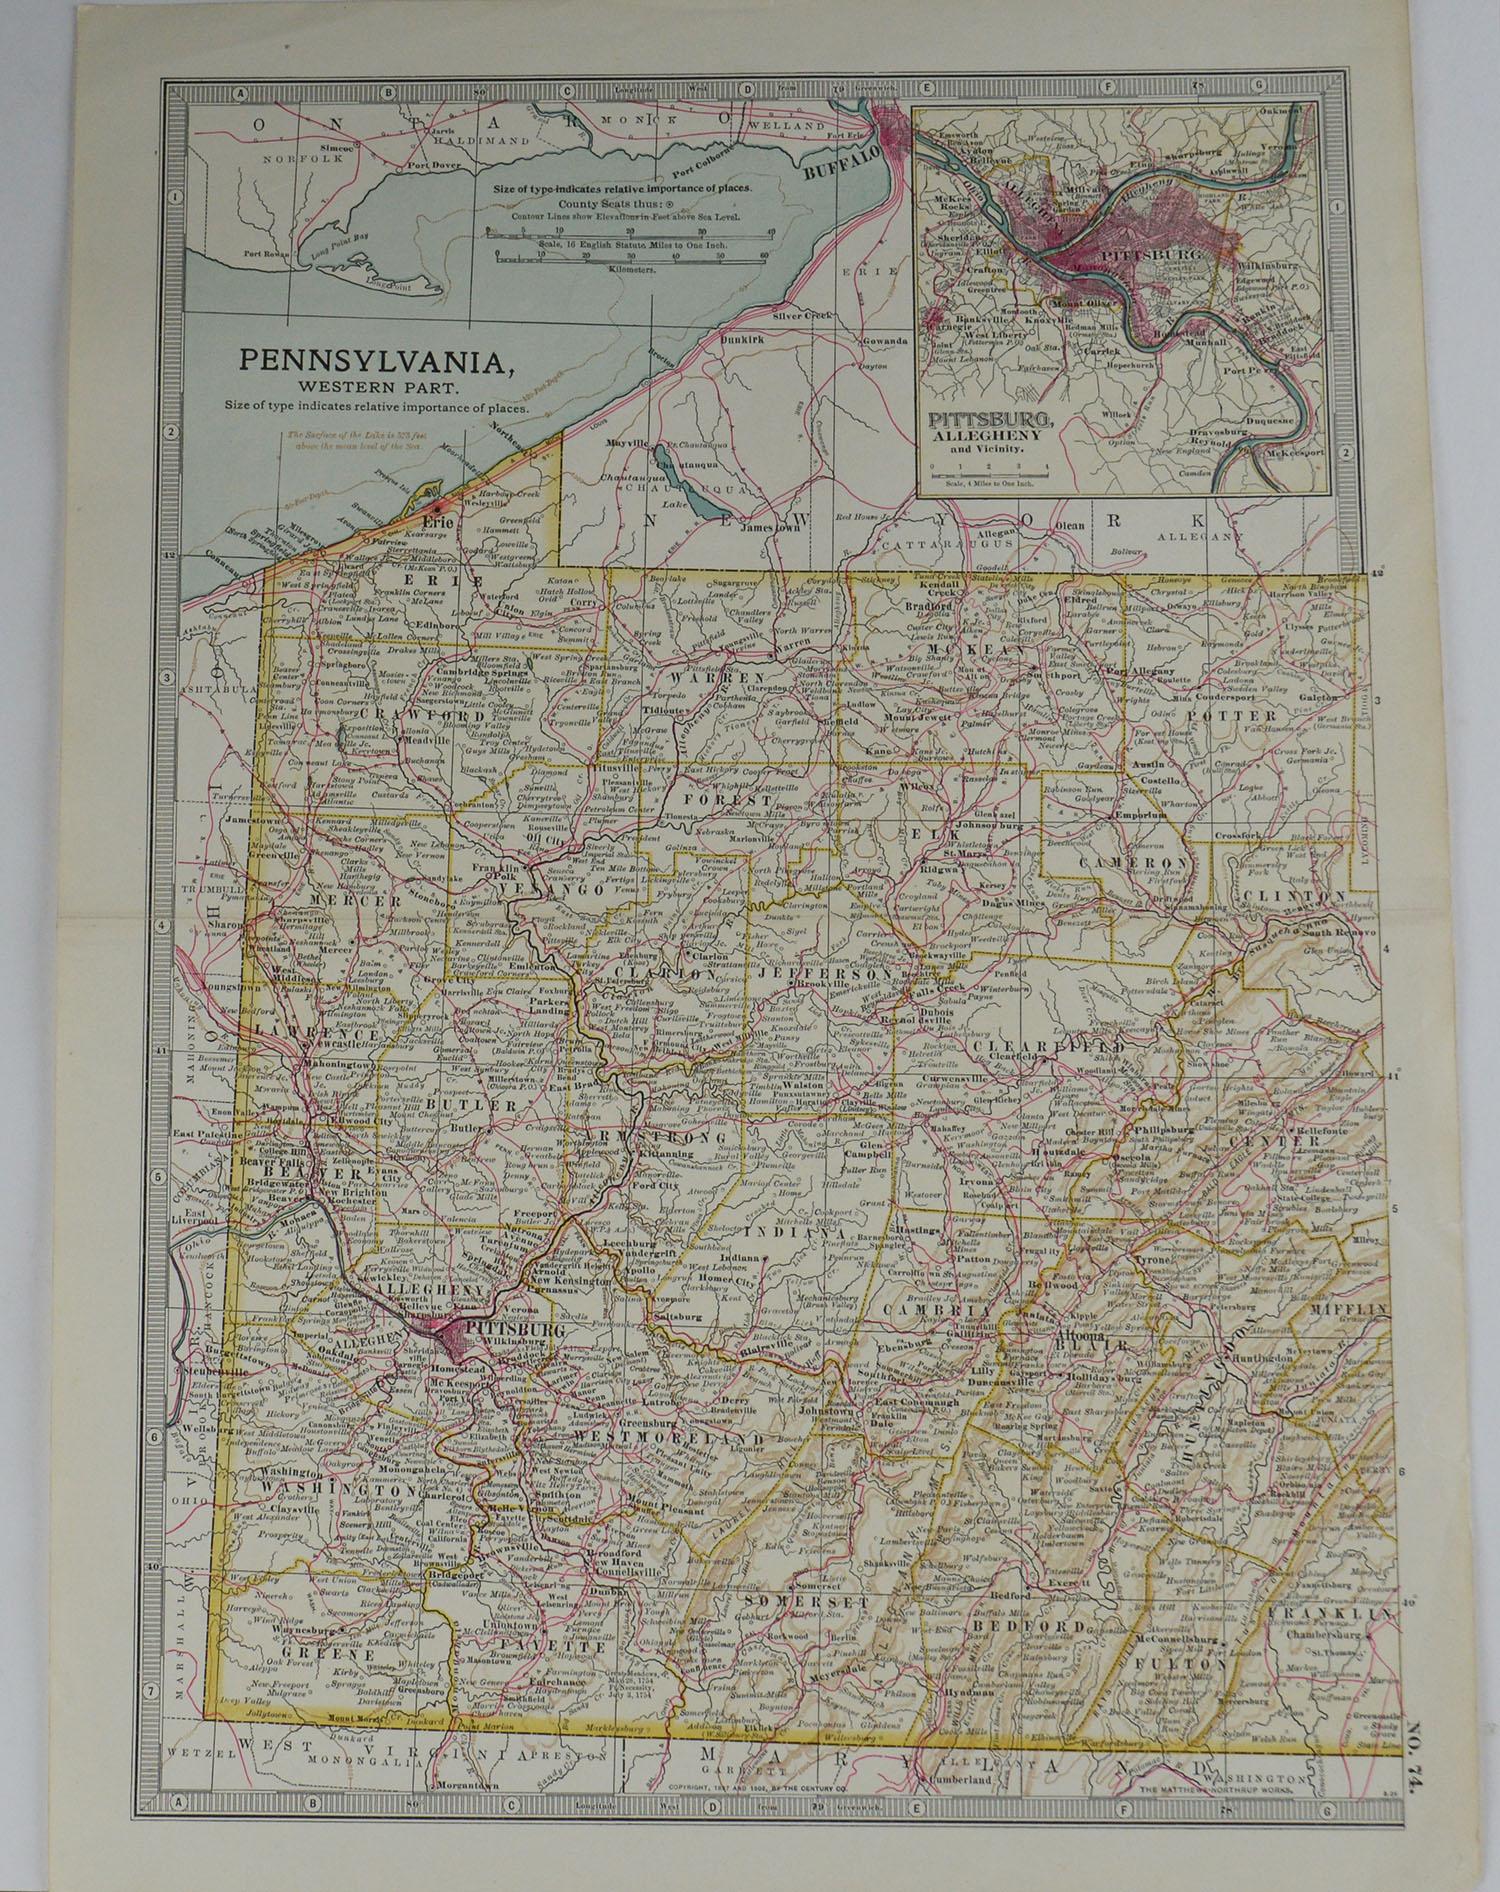 Other Original Antique Map of Pennsylvania, circa 1890